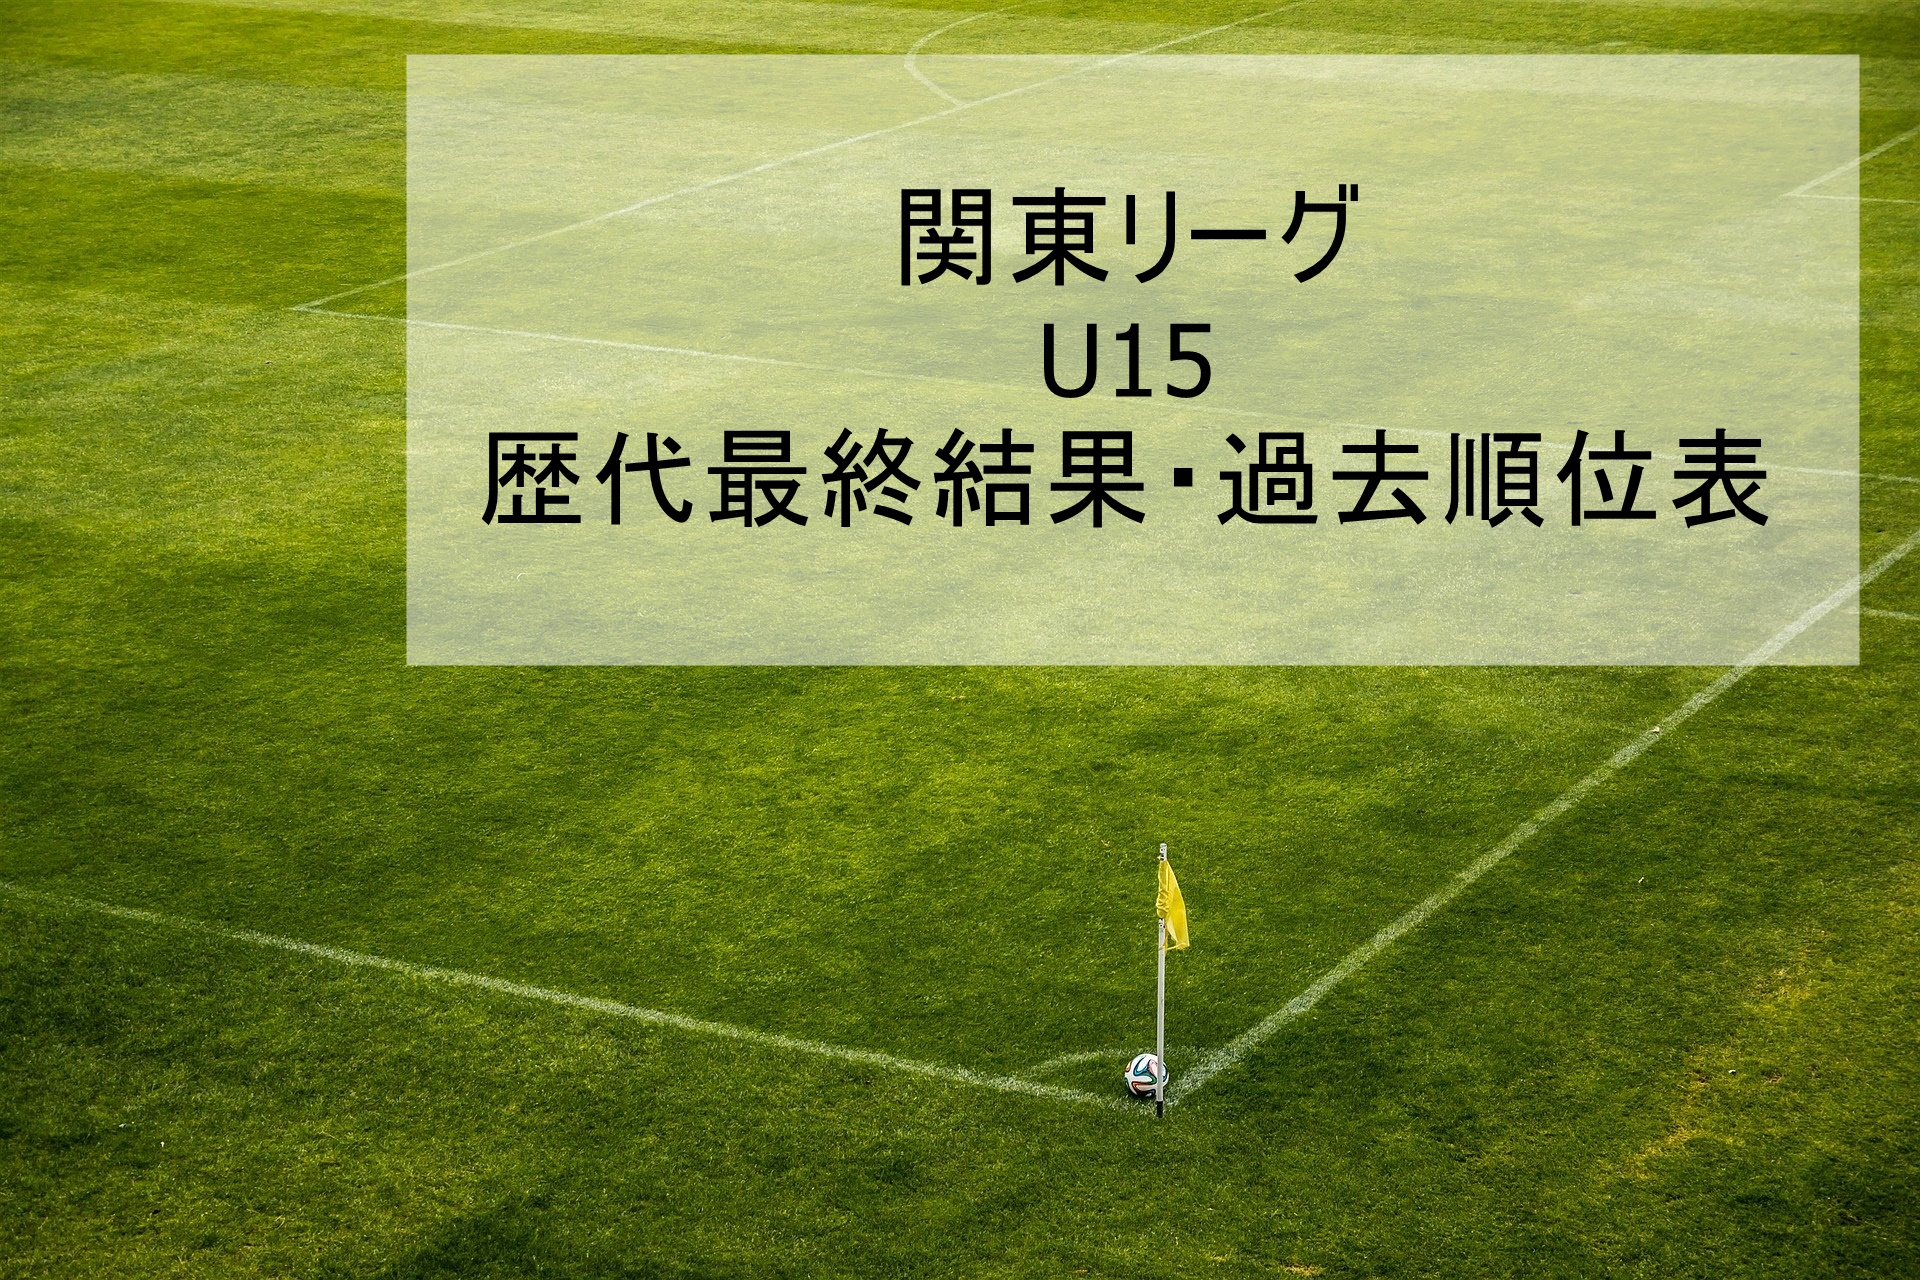 関東リーグ U15 歴代最終結果 過去順位表 21年まで更新